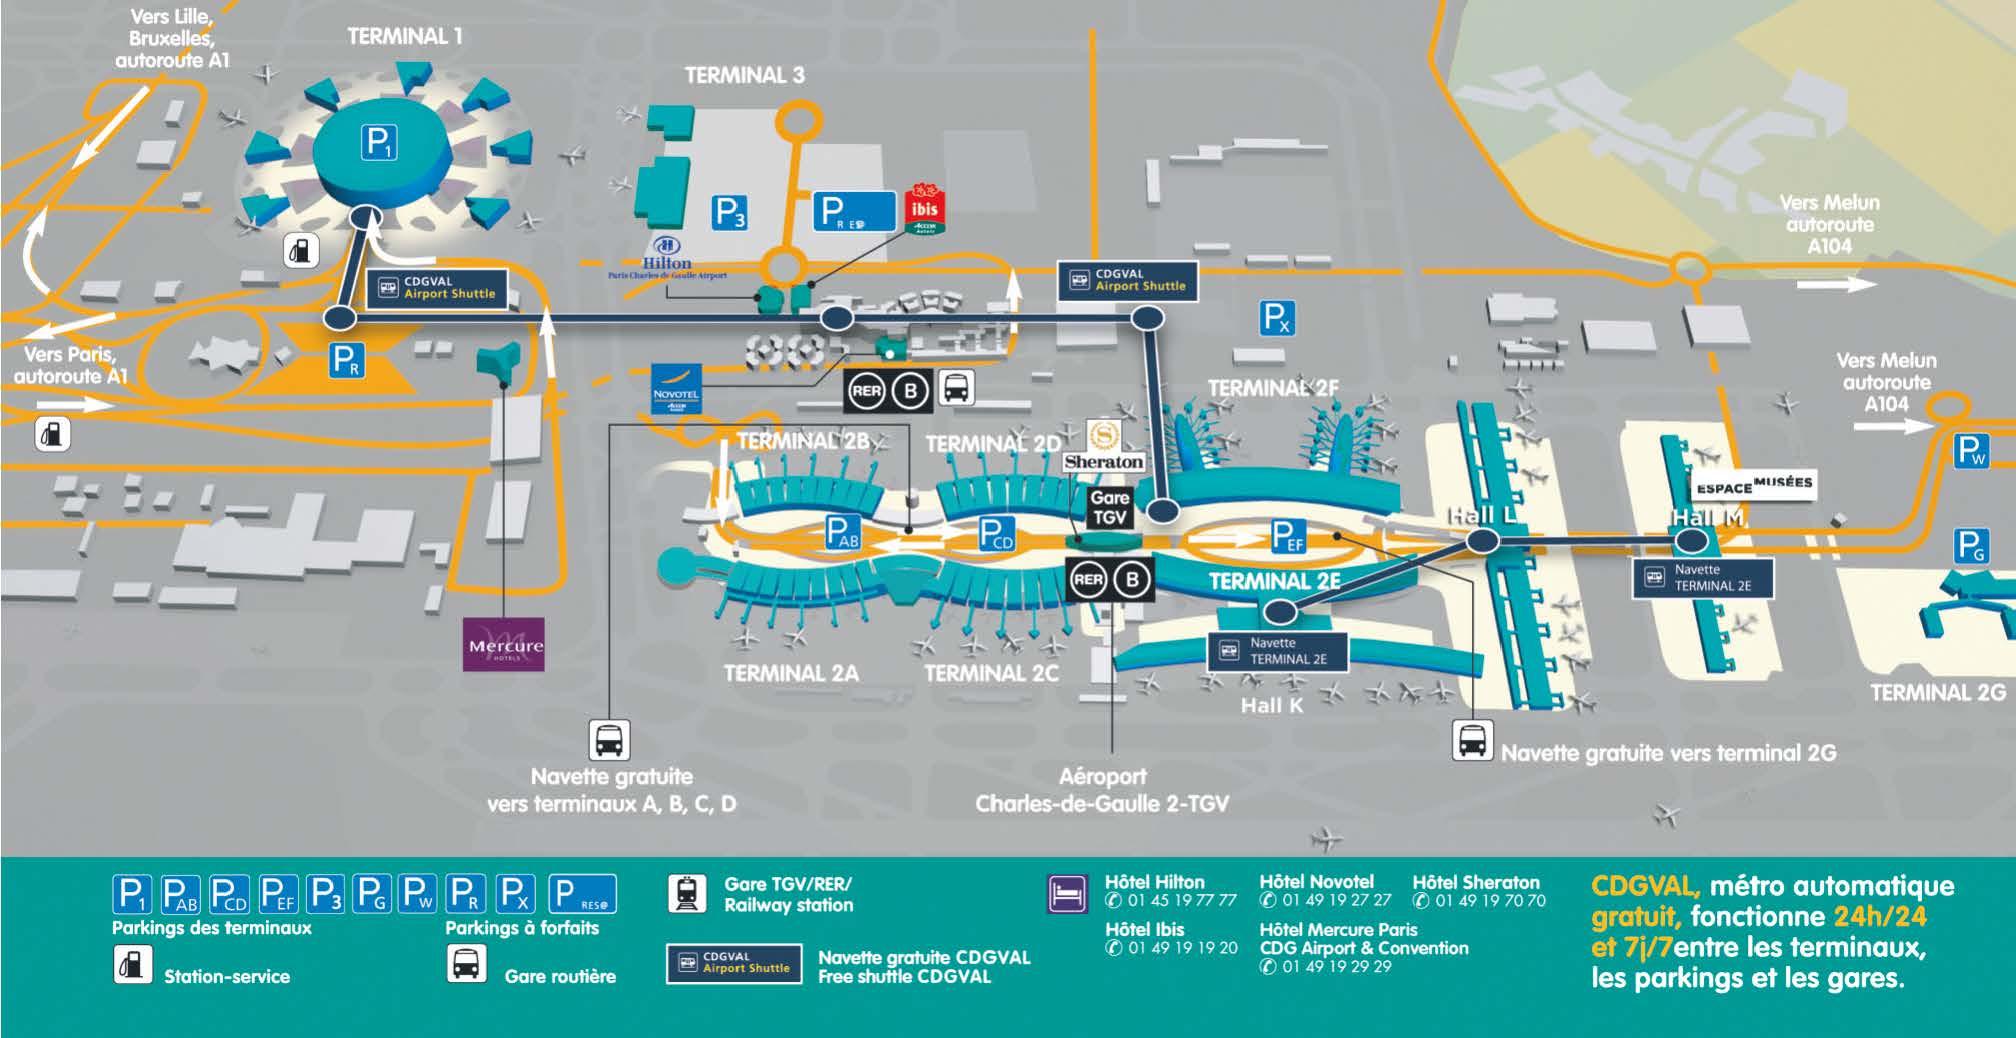 Схема аэропорта Шарль-де-Голь